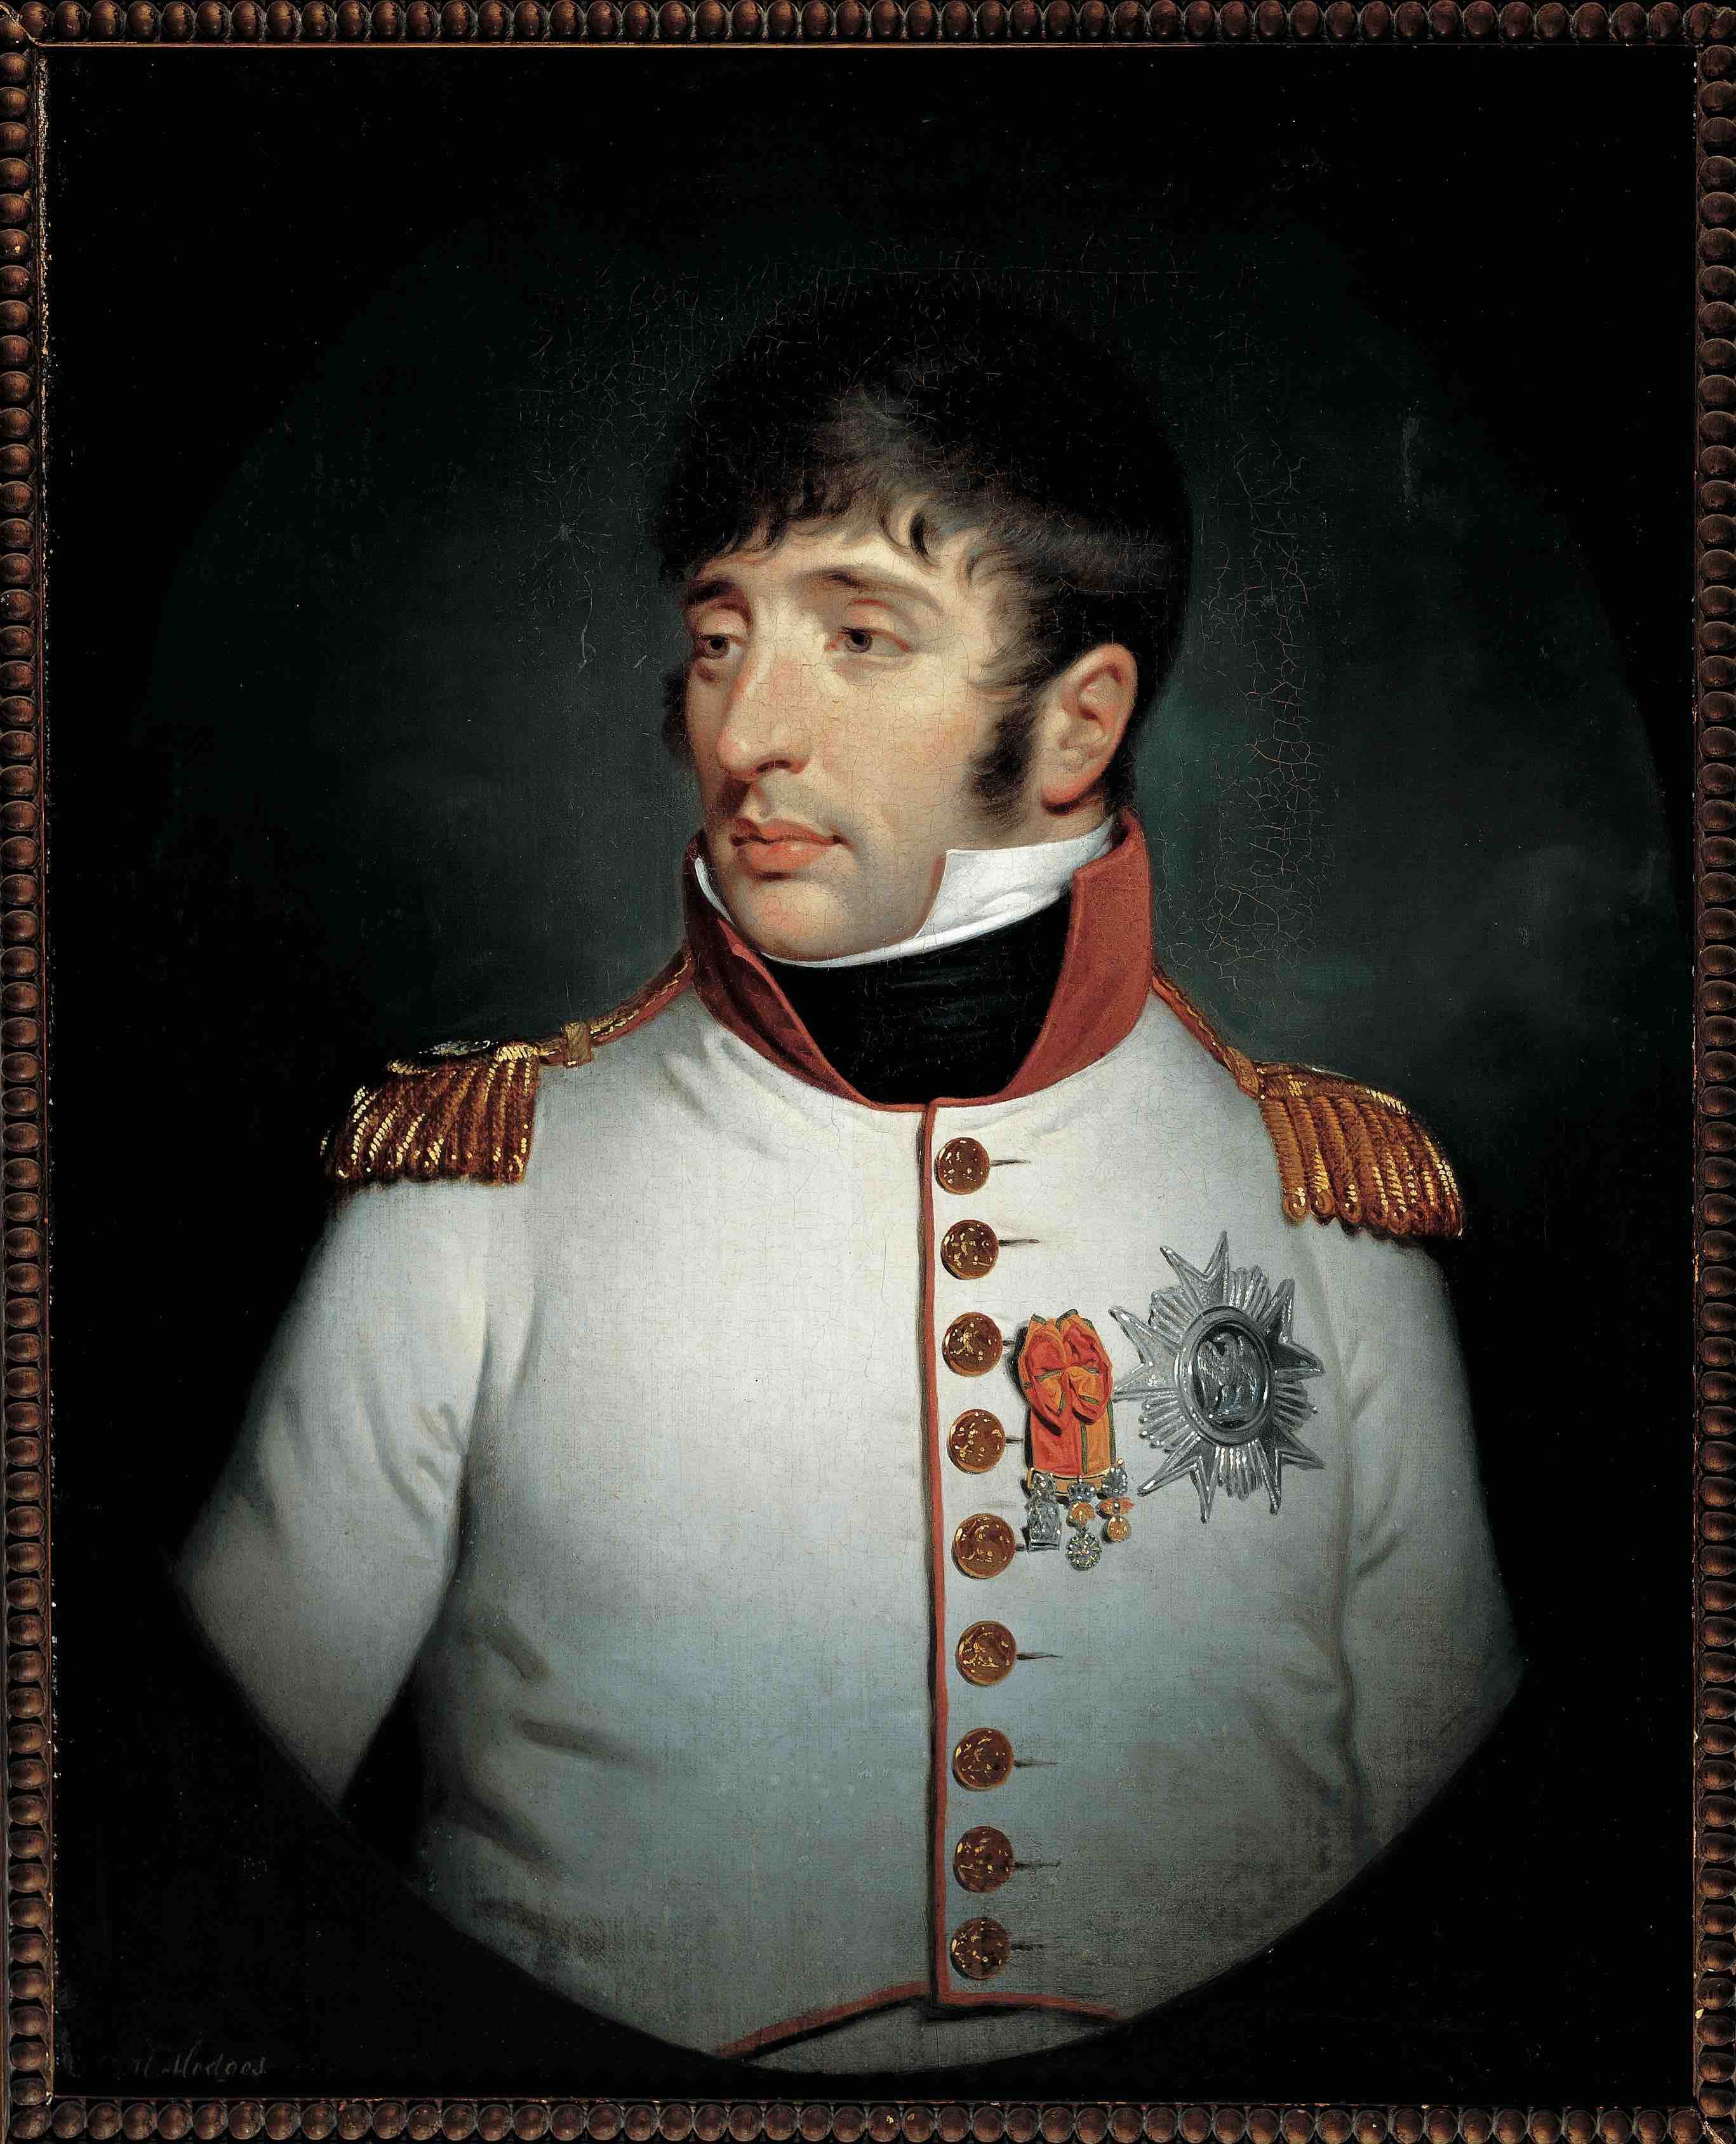 Charles Howard Hodges (1764-1837), Portret van koning Lodewijk Napoleon, 1808. Collectie Amsterdam Museum, bruikleen Frans Hals Museum.